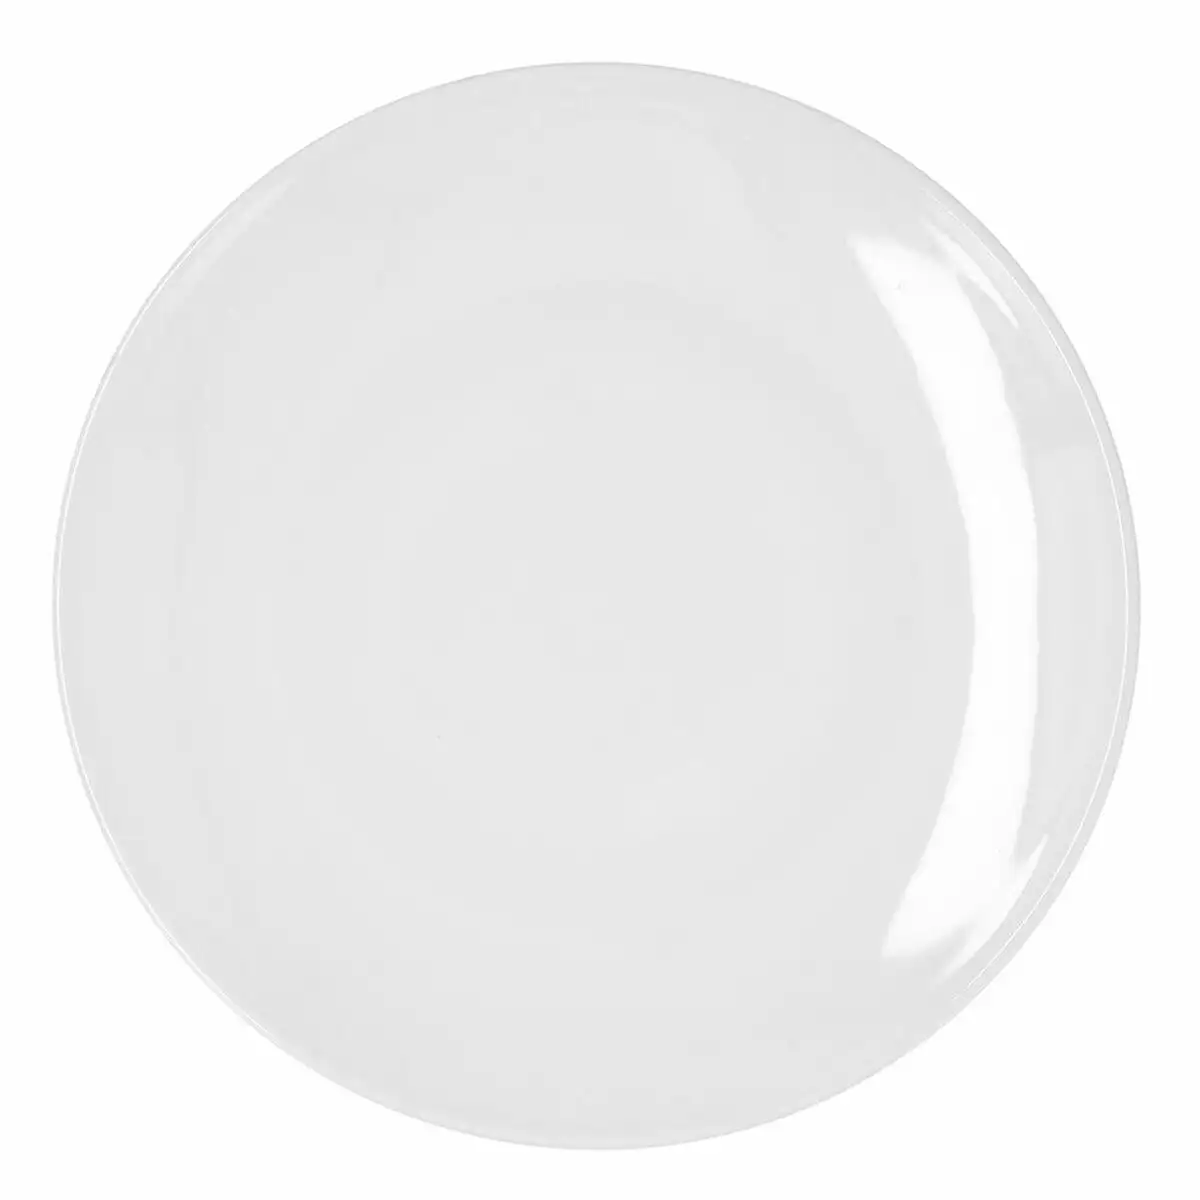 Assiette plate bidasoa glacial coupe ceramique blanc 30 cm pack 4x _8126. Entrez dans l'Univers de DIAYTAR SENEGAL - Où Choisir est un Voyage. Explorez notre gamme diversifiée et trouvez des articles qui répondent à tous vos besoins et envies.